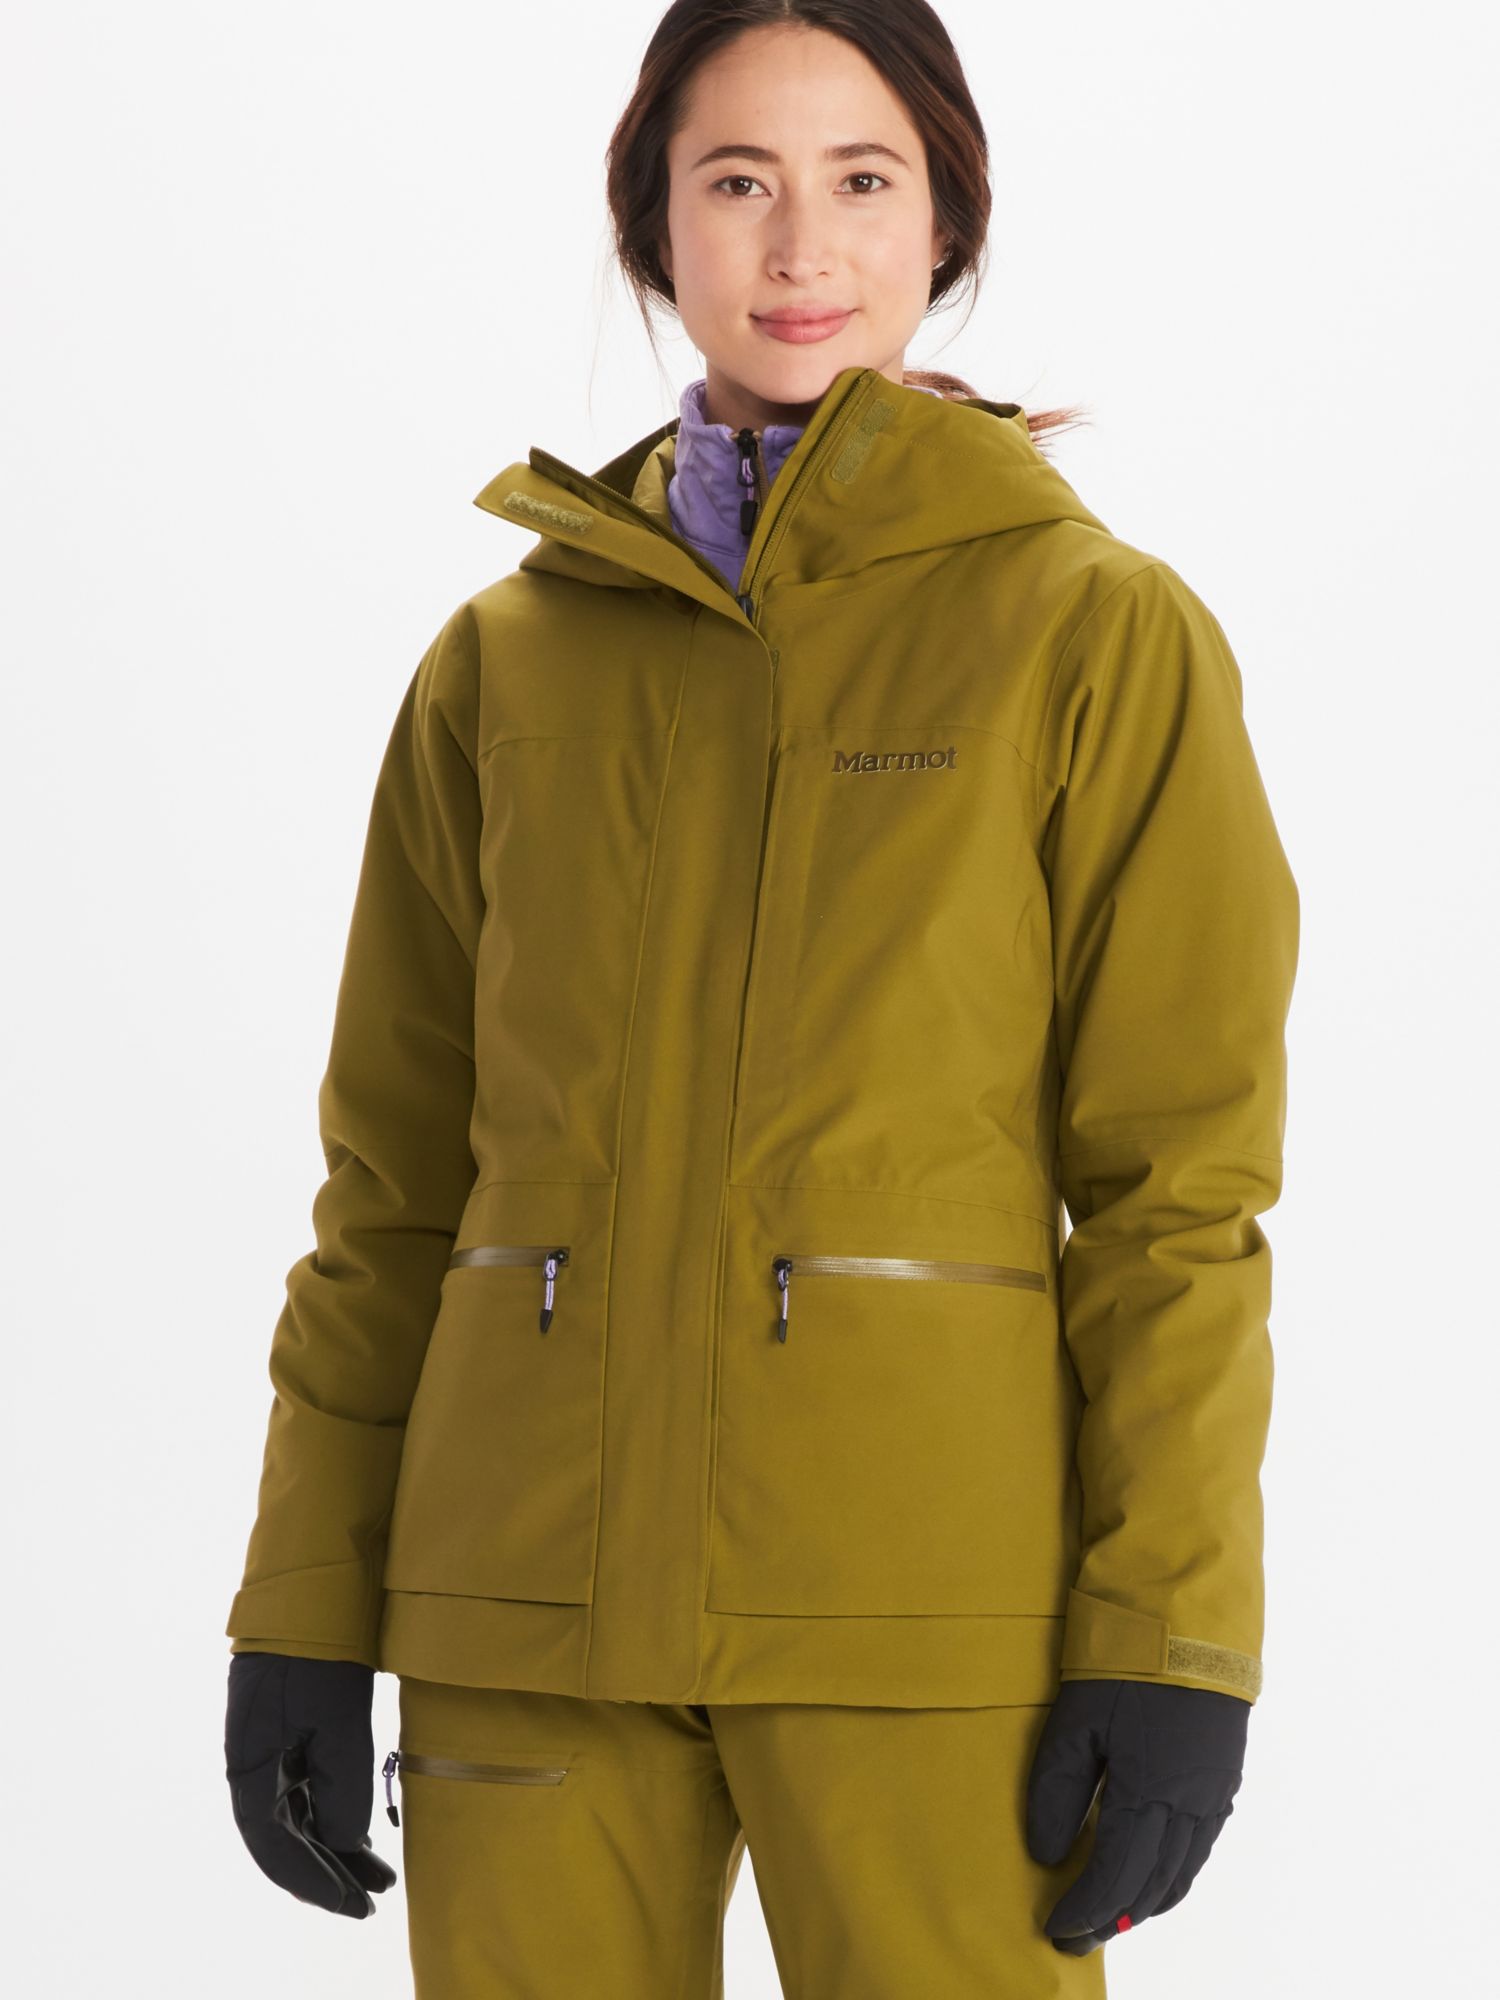 Morecome Coat Womens Ski Jacket Warm Winter Waterproof Windbreaker Fuzzy Fleece Lined Raincoat Snowboarding Jackets 